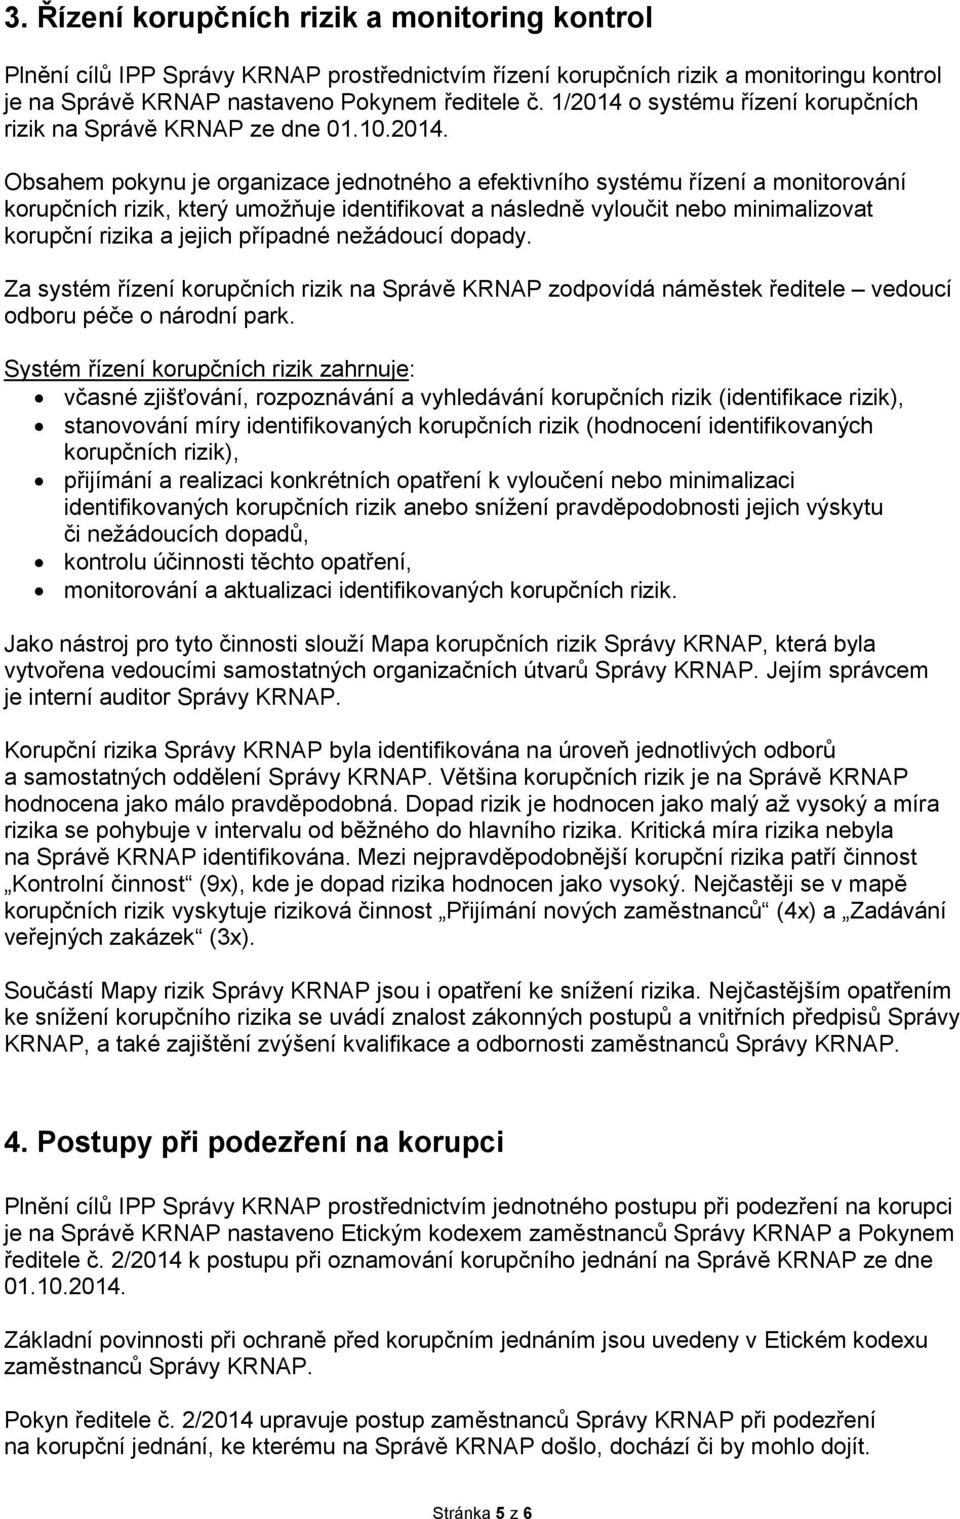 o systému řízení korupčních rizik na Správě KRNAP ze dne 01.10.2014.